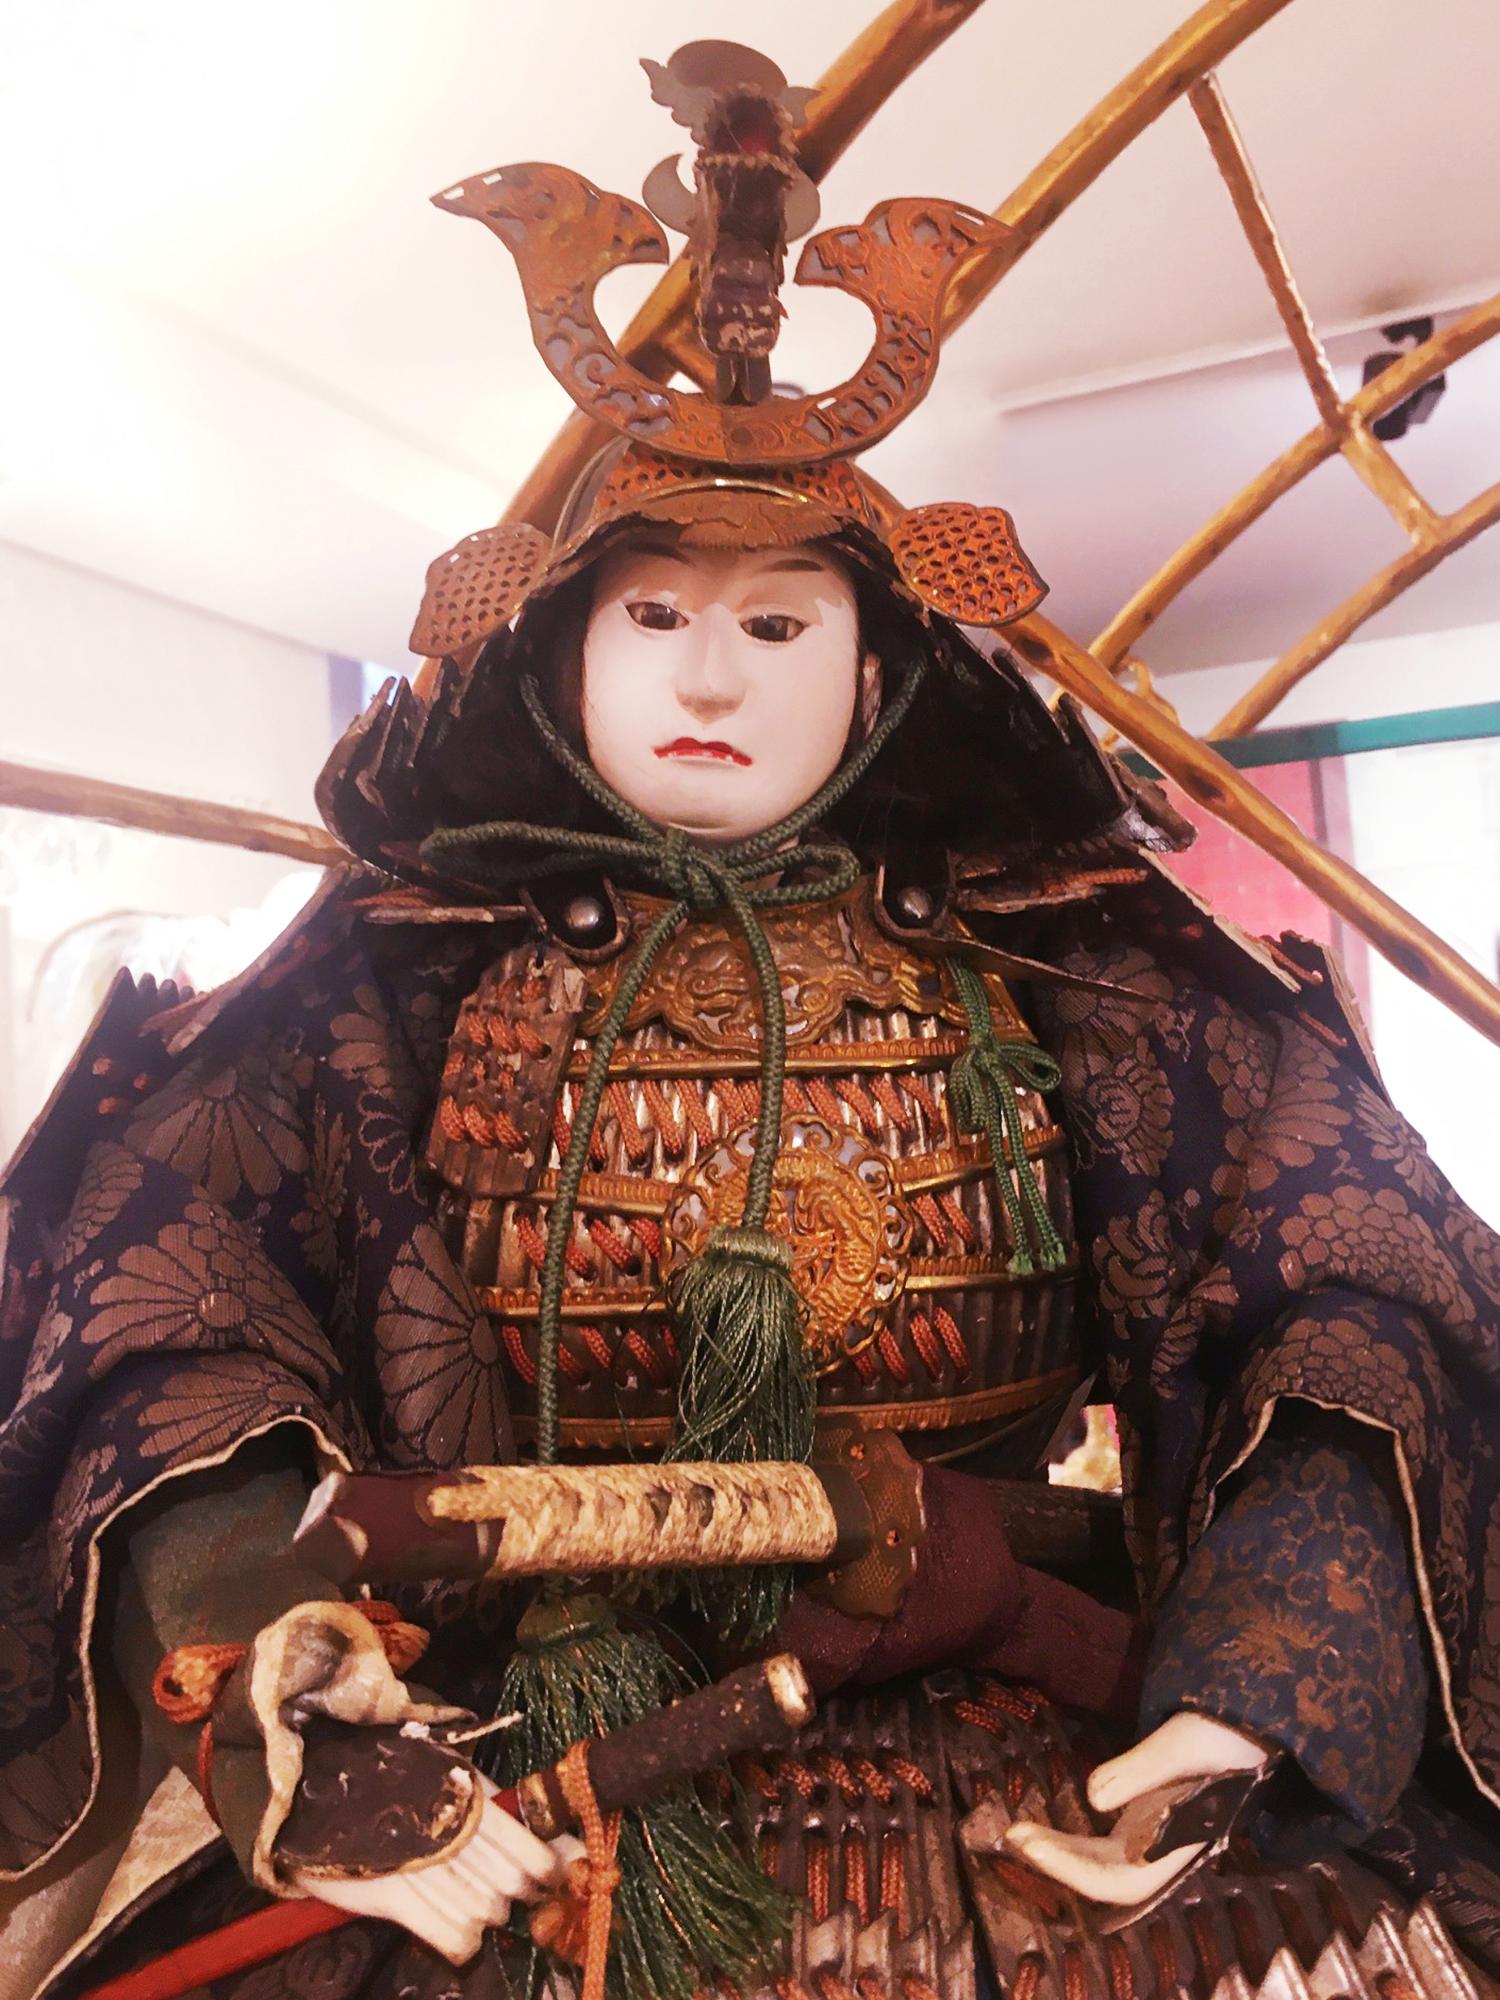 Sculpture Samuraï Puppet Musha Nyngyo A Set of 2 with structure
en bois, bois sculpté à la main, bois peint à la main, bois laqué à la main 
bois, recouvert de vêtements de marionnettes en soie brodés à la main. Tous
Les détails sont sculptés et